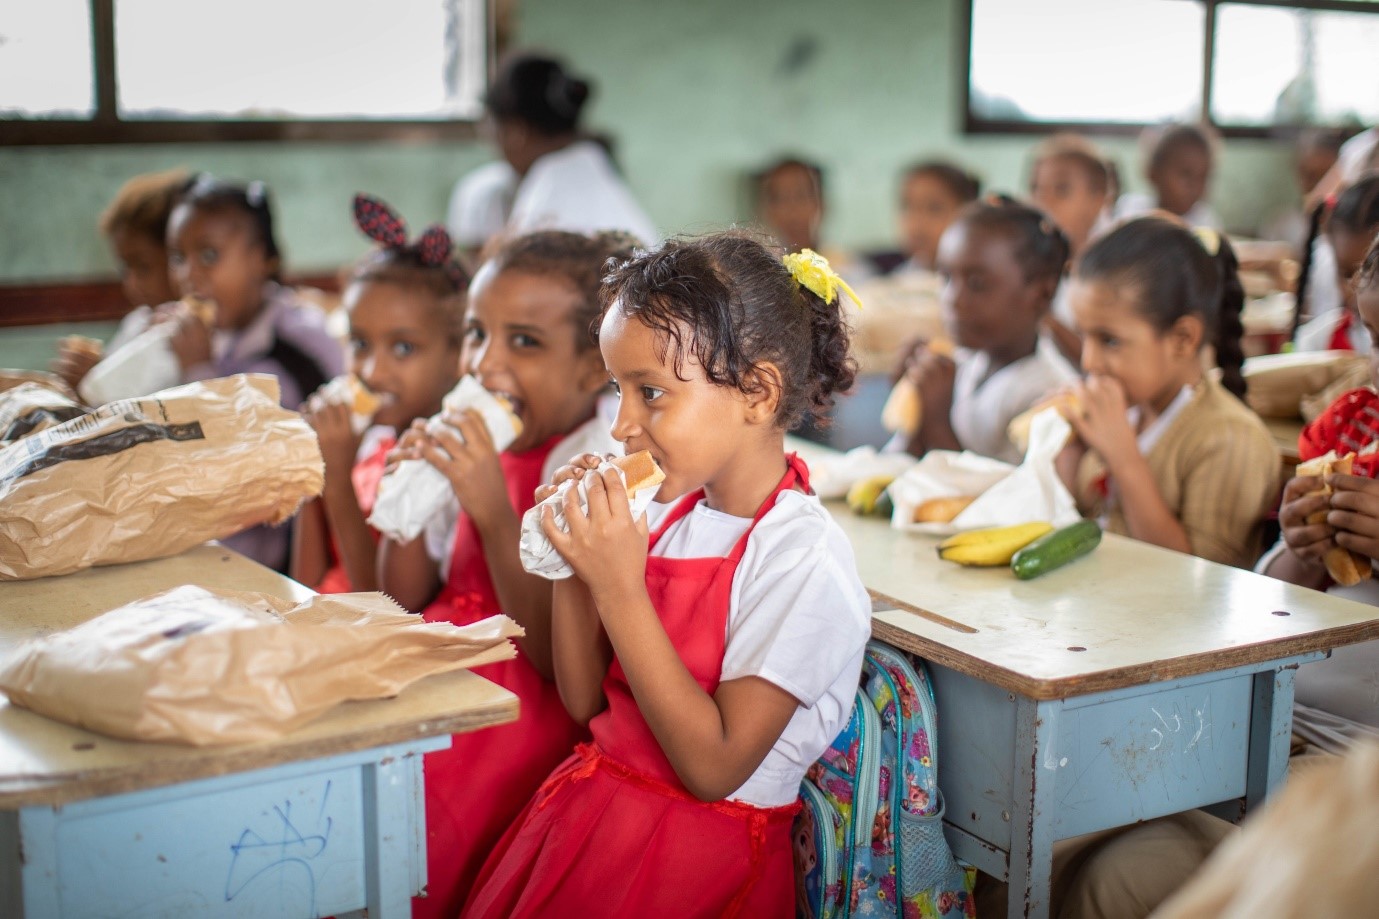 النساء والفتيات من بين أكثر من 12 مليون شخص يقدم لهم برنامج الأغذية العالمي مساعدات غذائية كل شهر في اليمن. تصوير: برنامج الأغذية العالمي / محمد ناشر